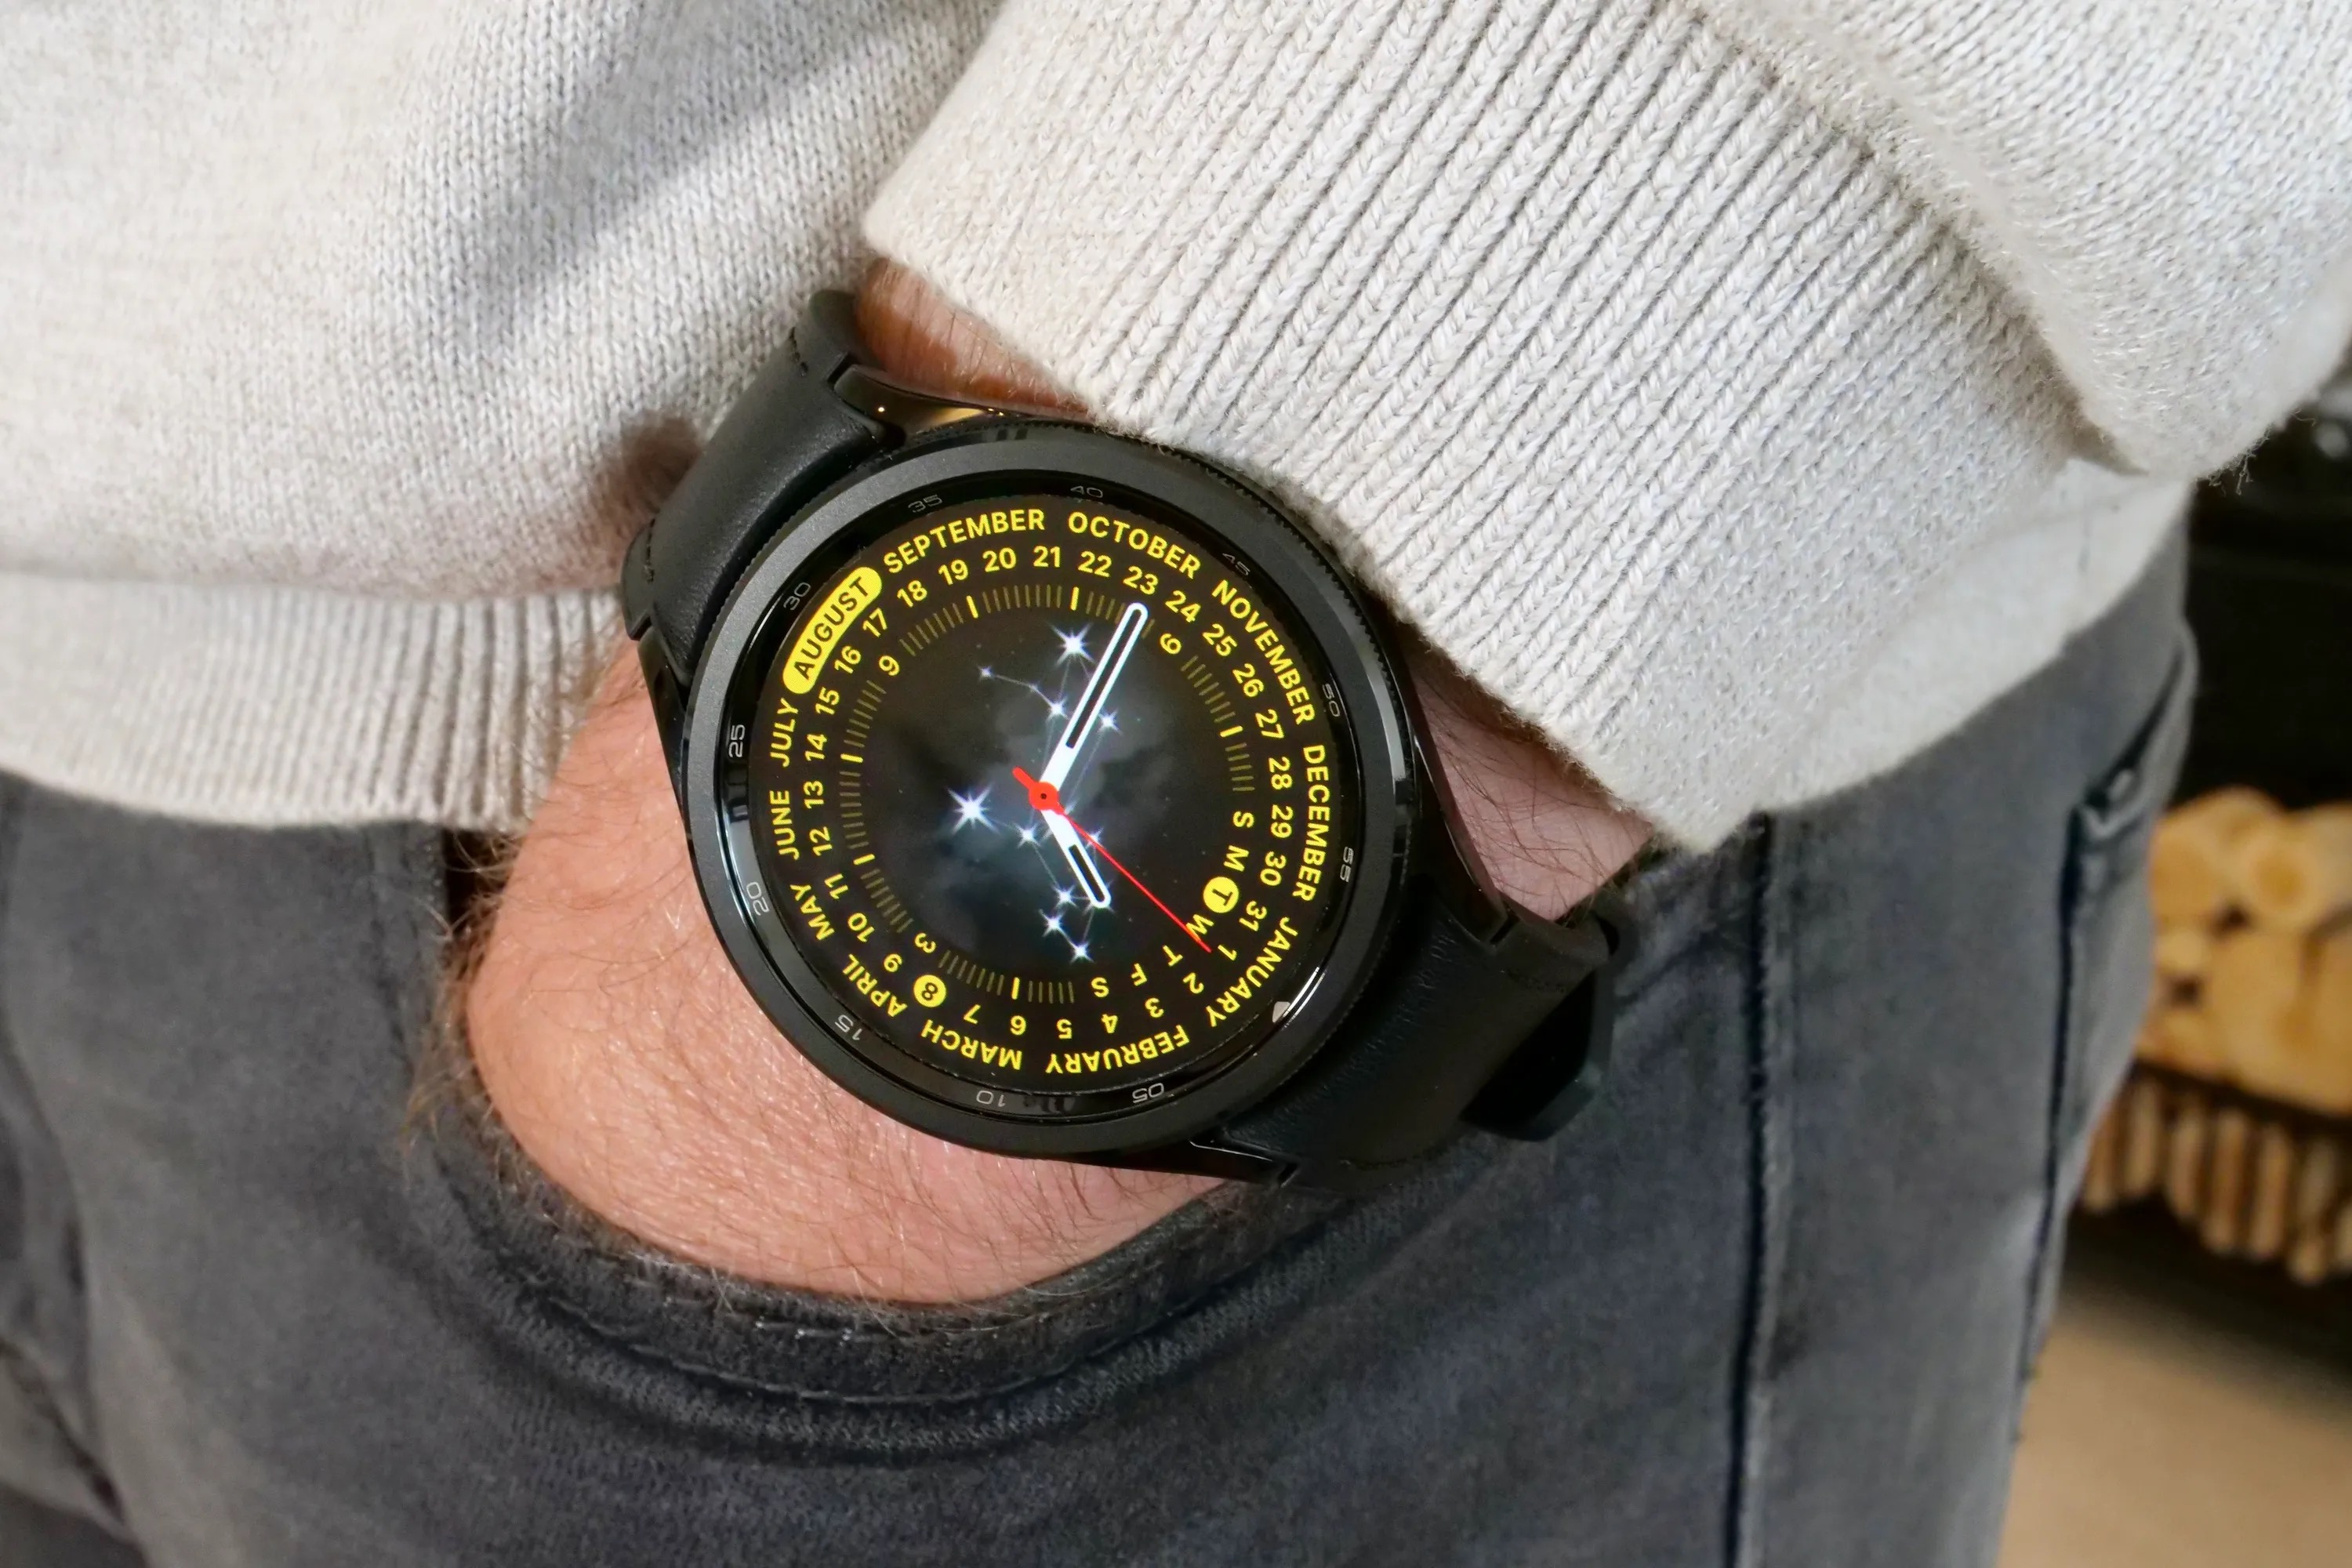 El reloj digital Casio súper barato para regalar a hombres de más de 40 años